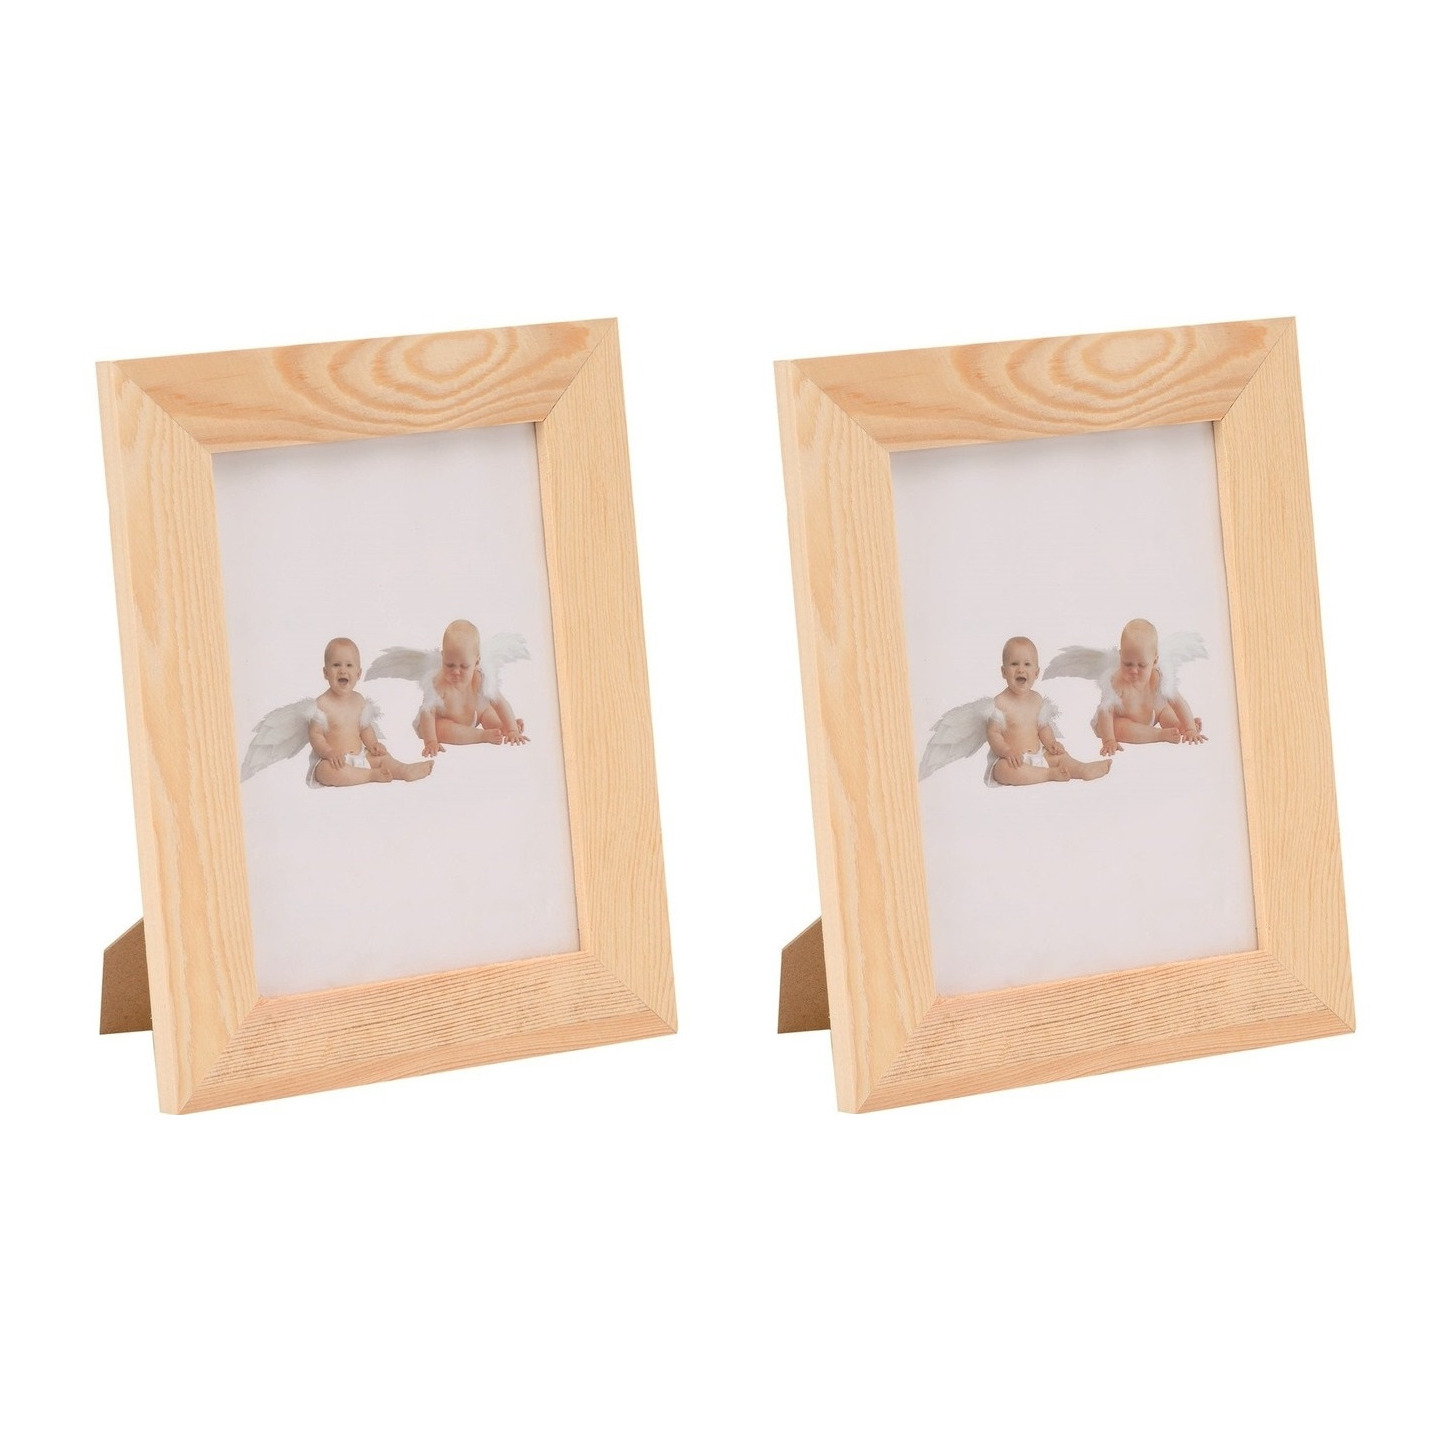 4x DIY houten fotolijstjes 17,5 x 22,5 cm hobby-knutselmateriaal